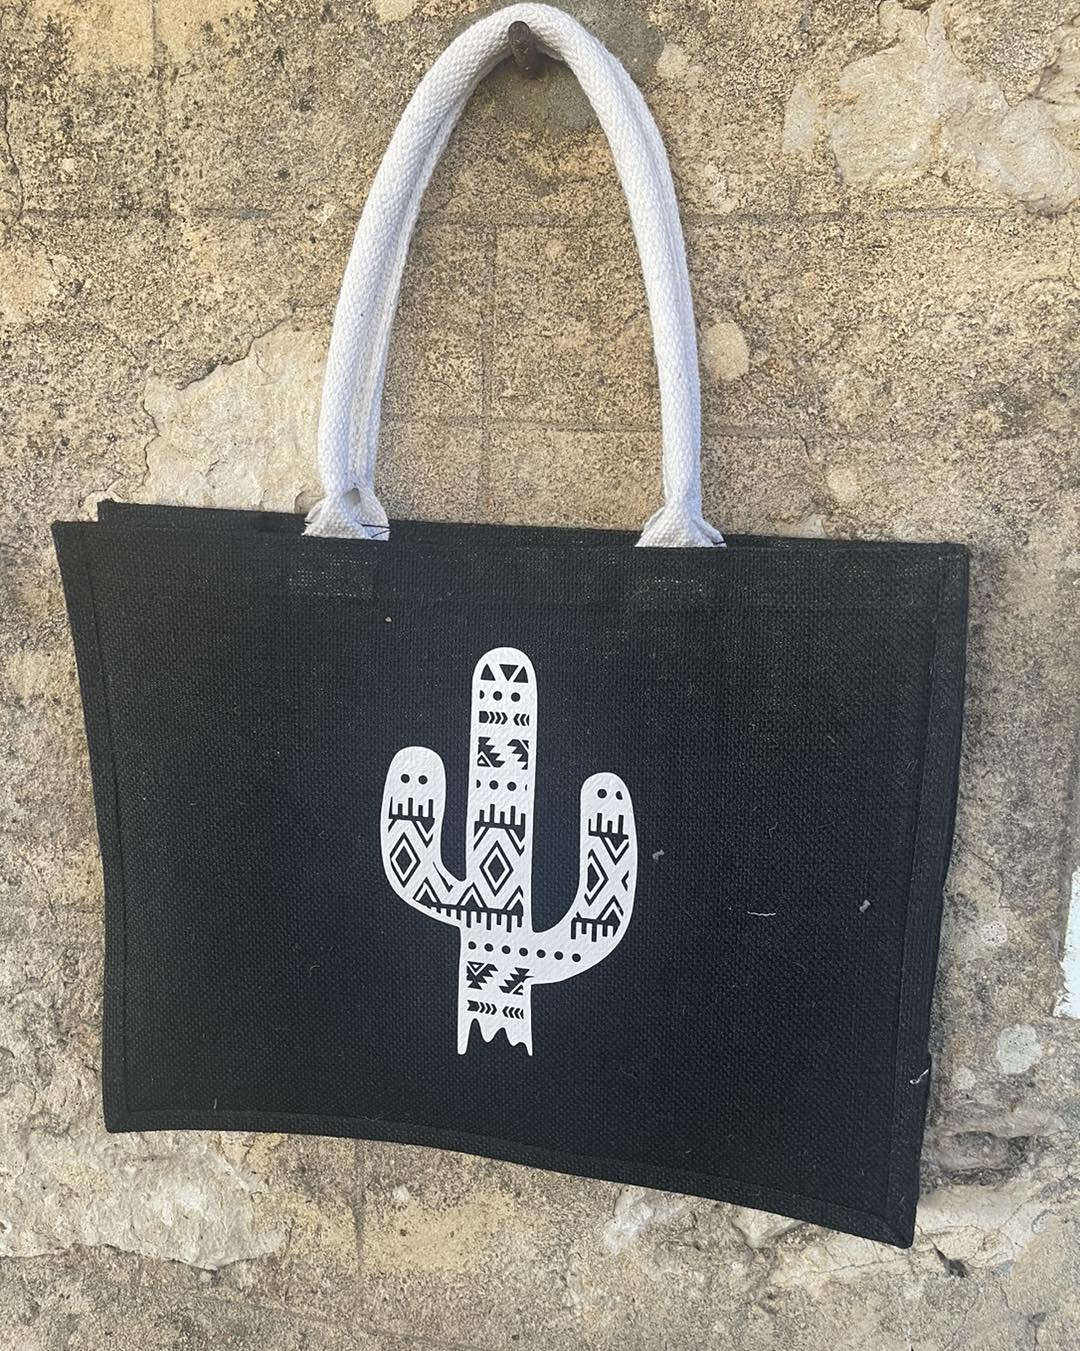 Market garden hessian Shopping bag -  Cactus